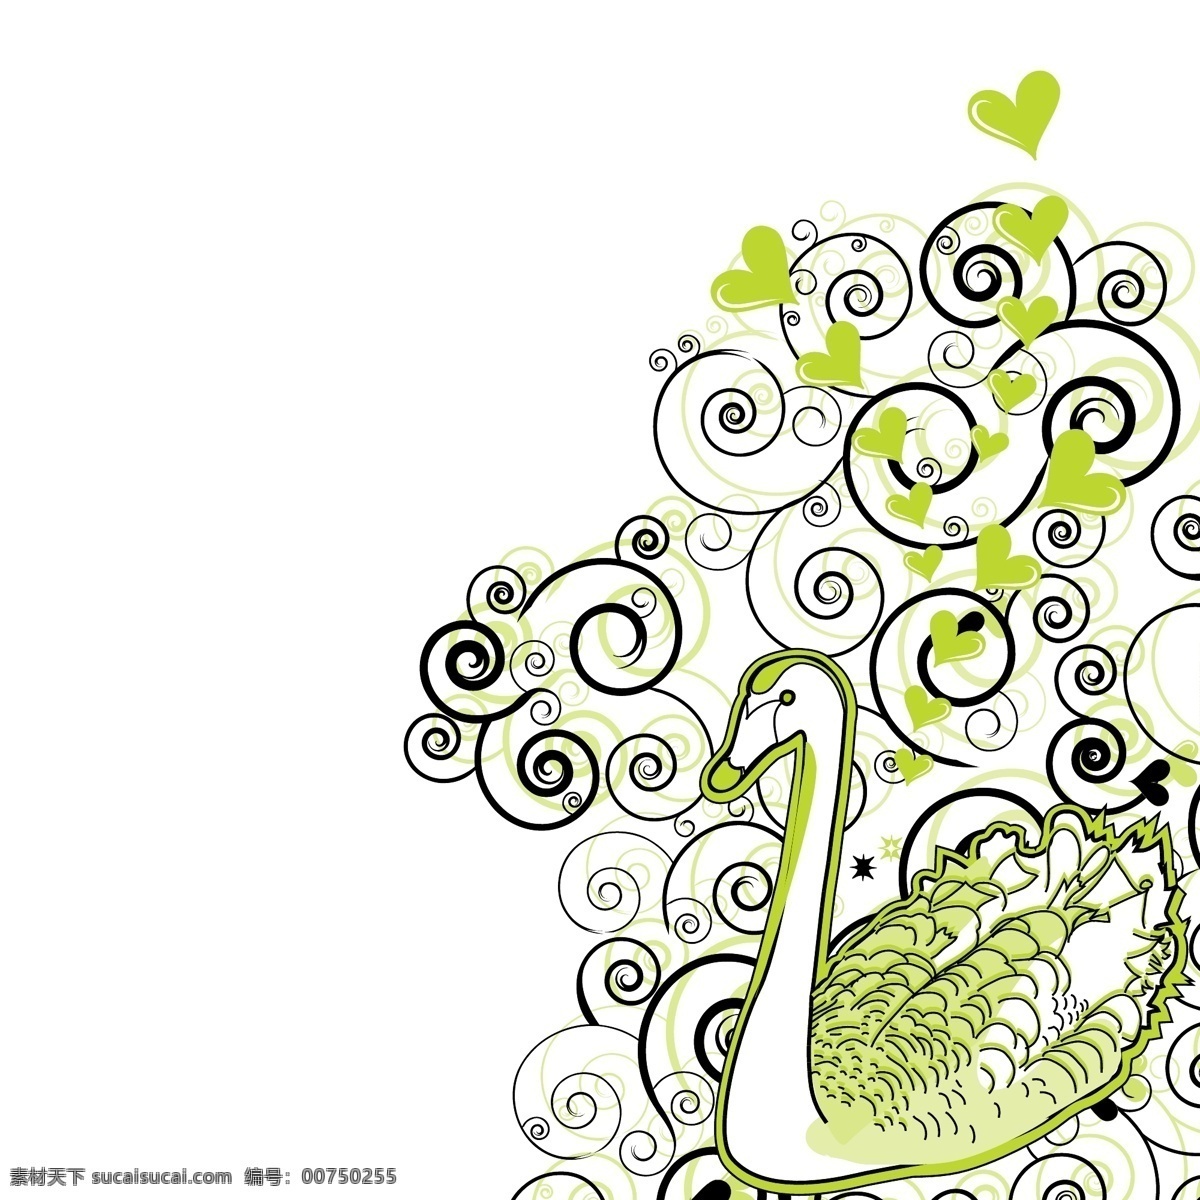 绿色 天鹅 花纹 背景 矢量 鹅 爱心 心形 心型 手绘 动物 卡通 插画 海报 画册 矢量动物 生物世界 家禽家畜